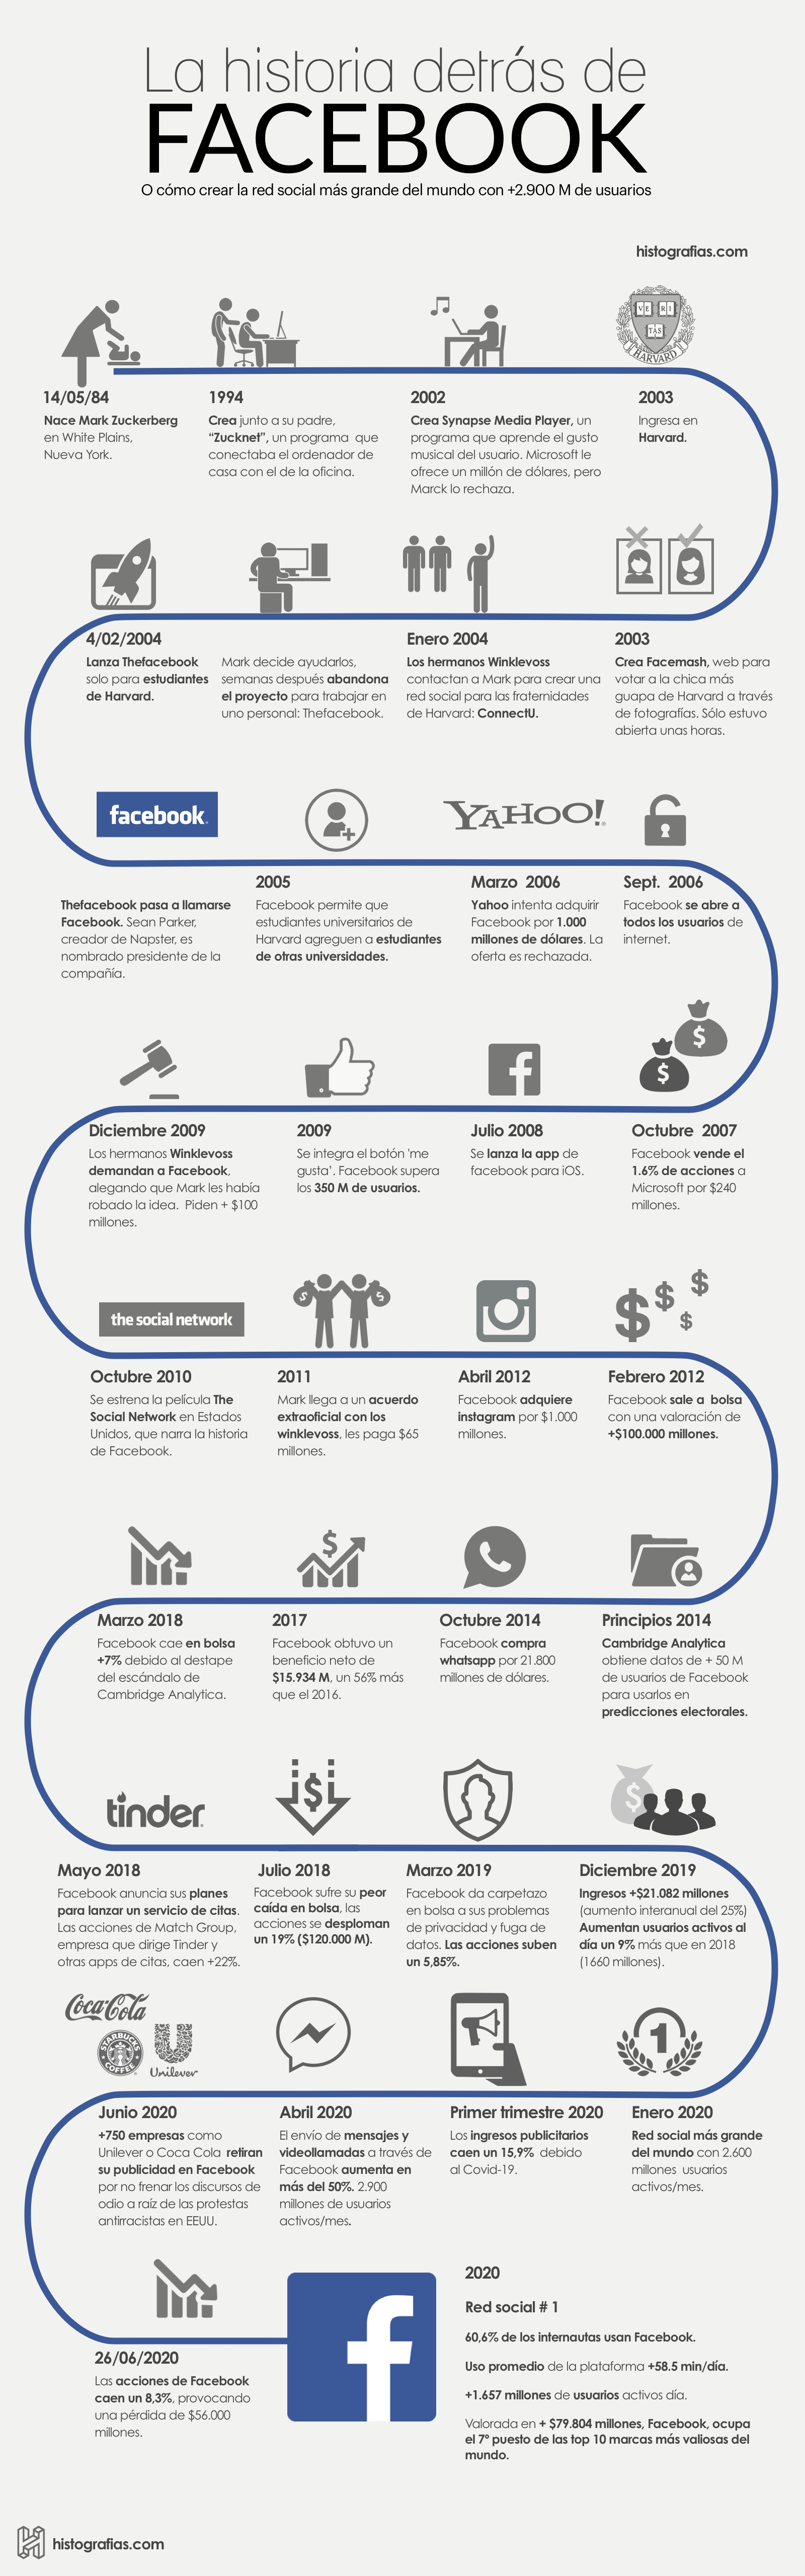 infografía que cuenta la historia de Facebook desde el nacimiento de Mark Zukemberg en 1984, hasta el año 2020, año en el que se consolida como la red social más grande del mundo con una valoración de más de 79.804 millones de dólares.